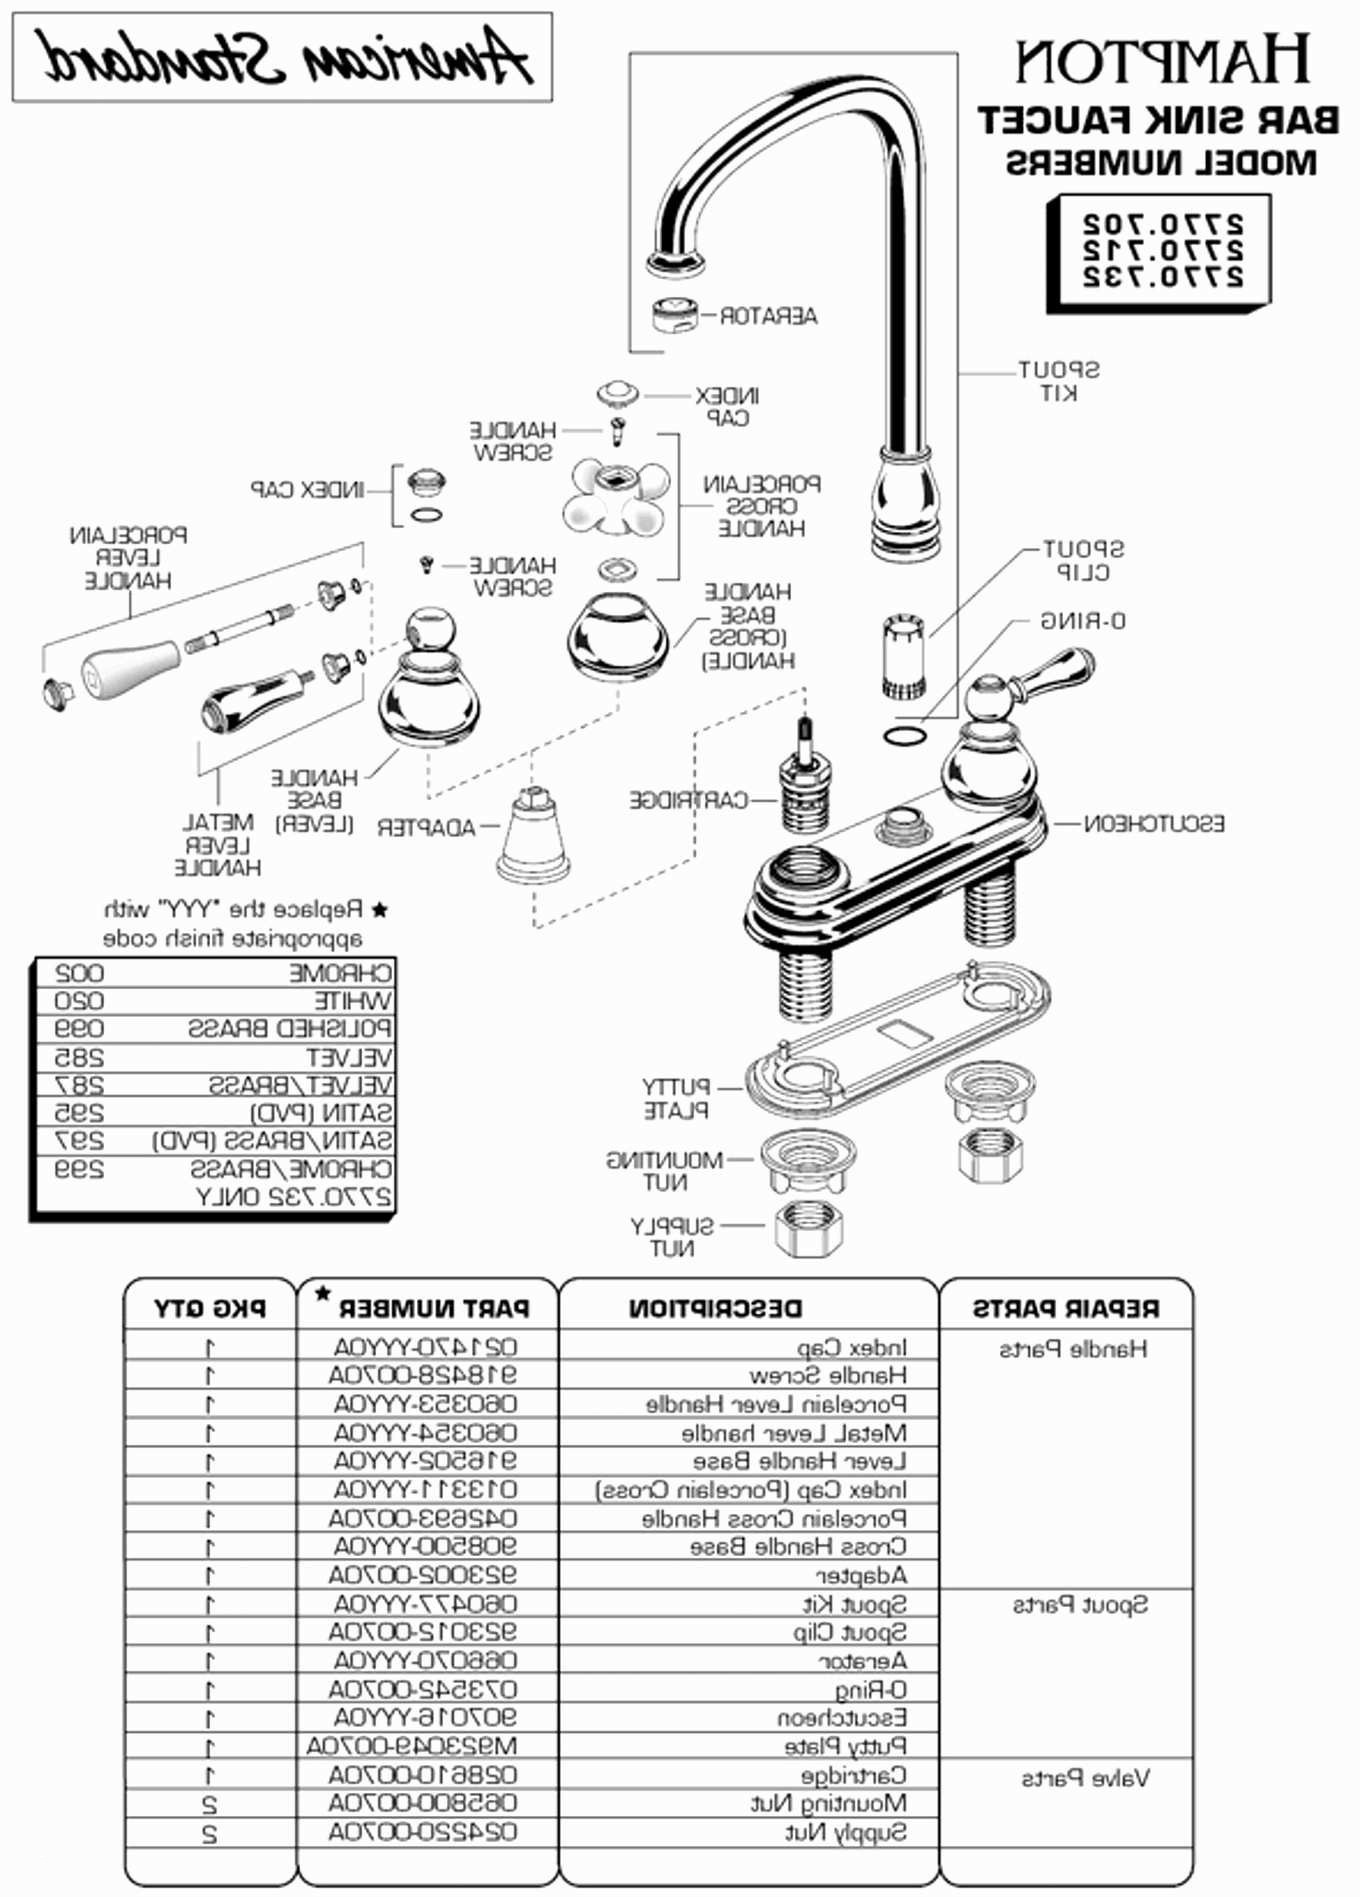 Suspension Parts Diagram Vehicle Suspension Diagram Vehicle Wiring Diagrams New Diagram A Car Of Suspension Parts Diagram